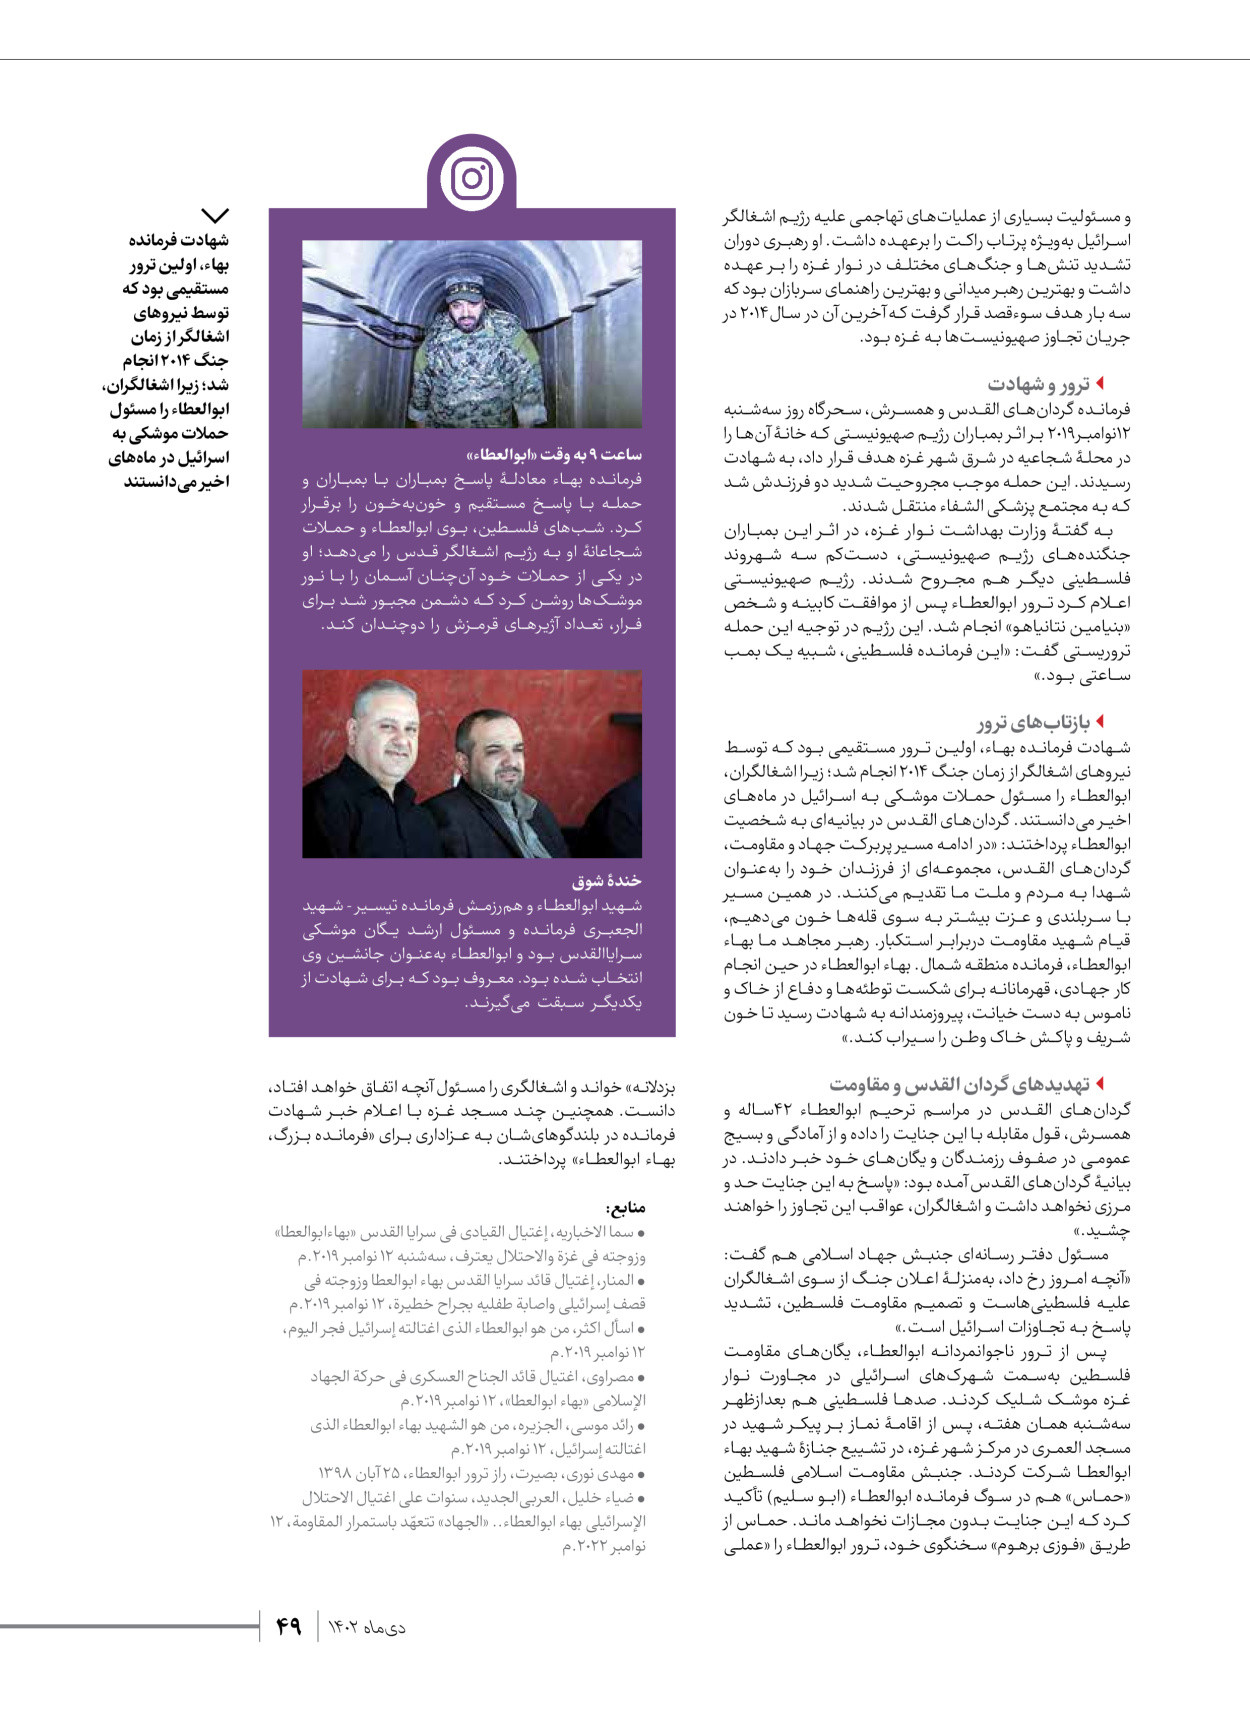 روزنامه ایران - ویژه نامه شهدای قدس ۲ - ۲۳ دی ۱۴۰۲ - صفحه ۴۹